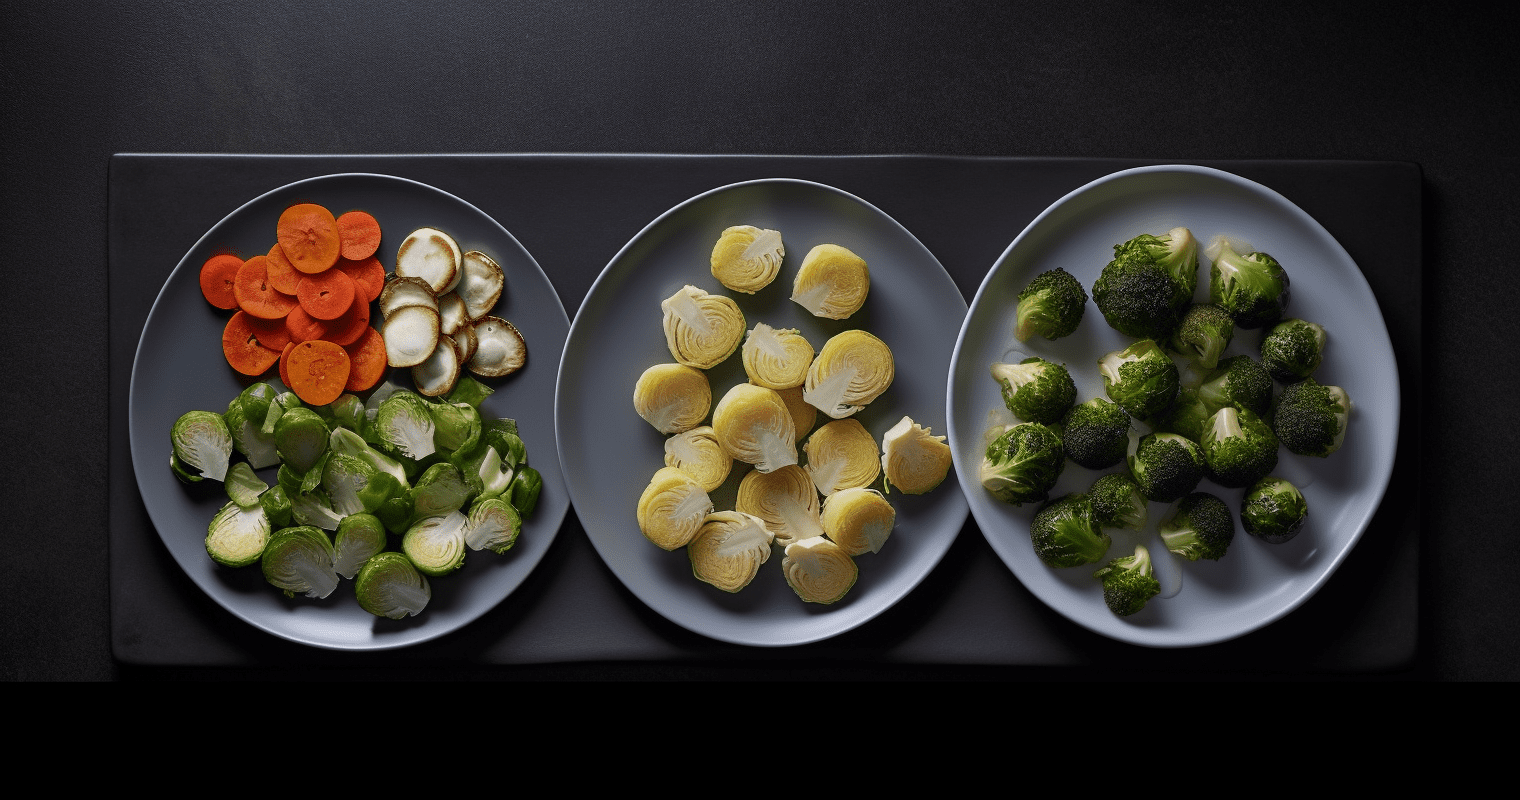 Vegetable Stir-Fry Ingredients